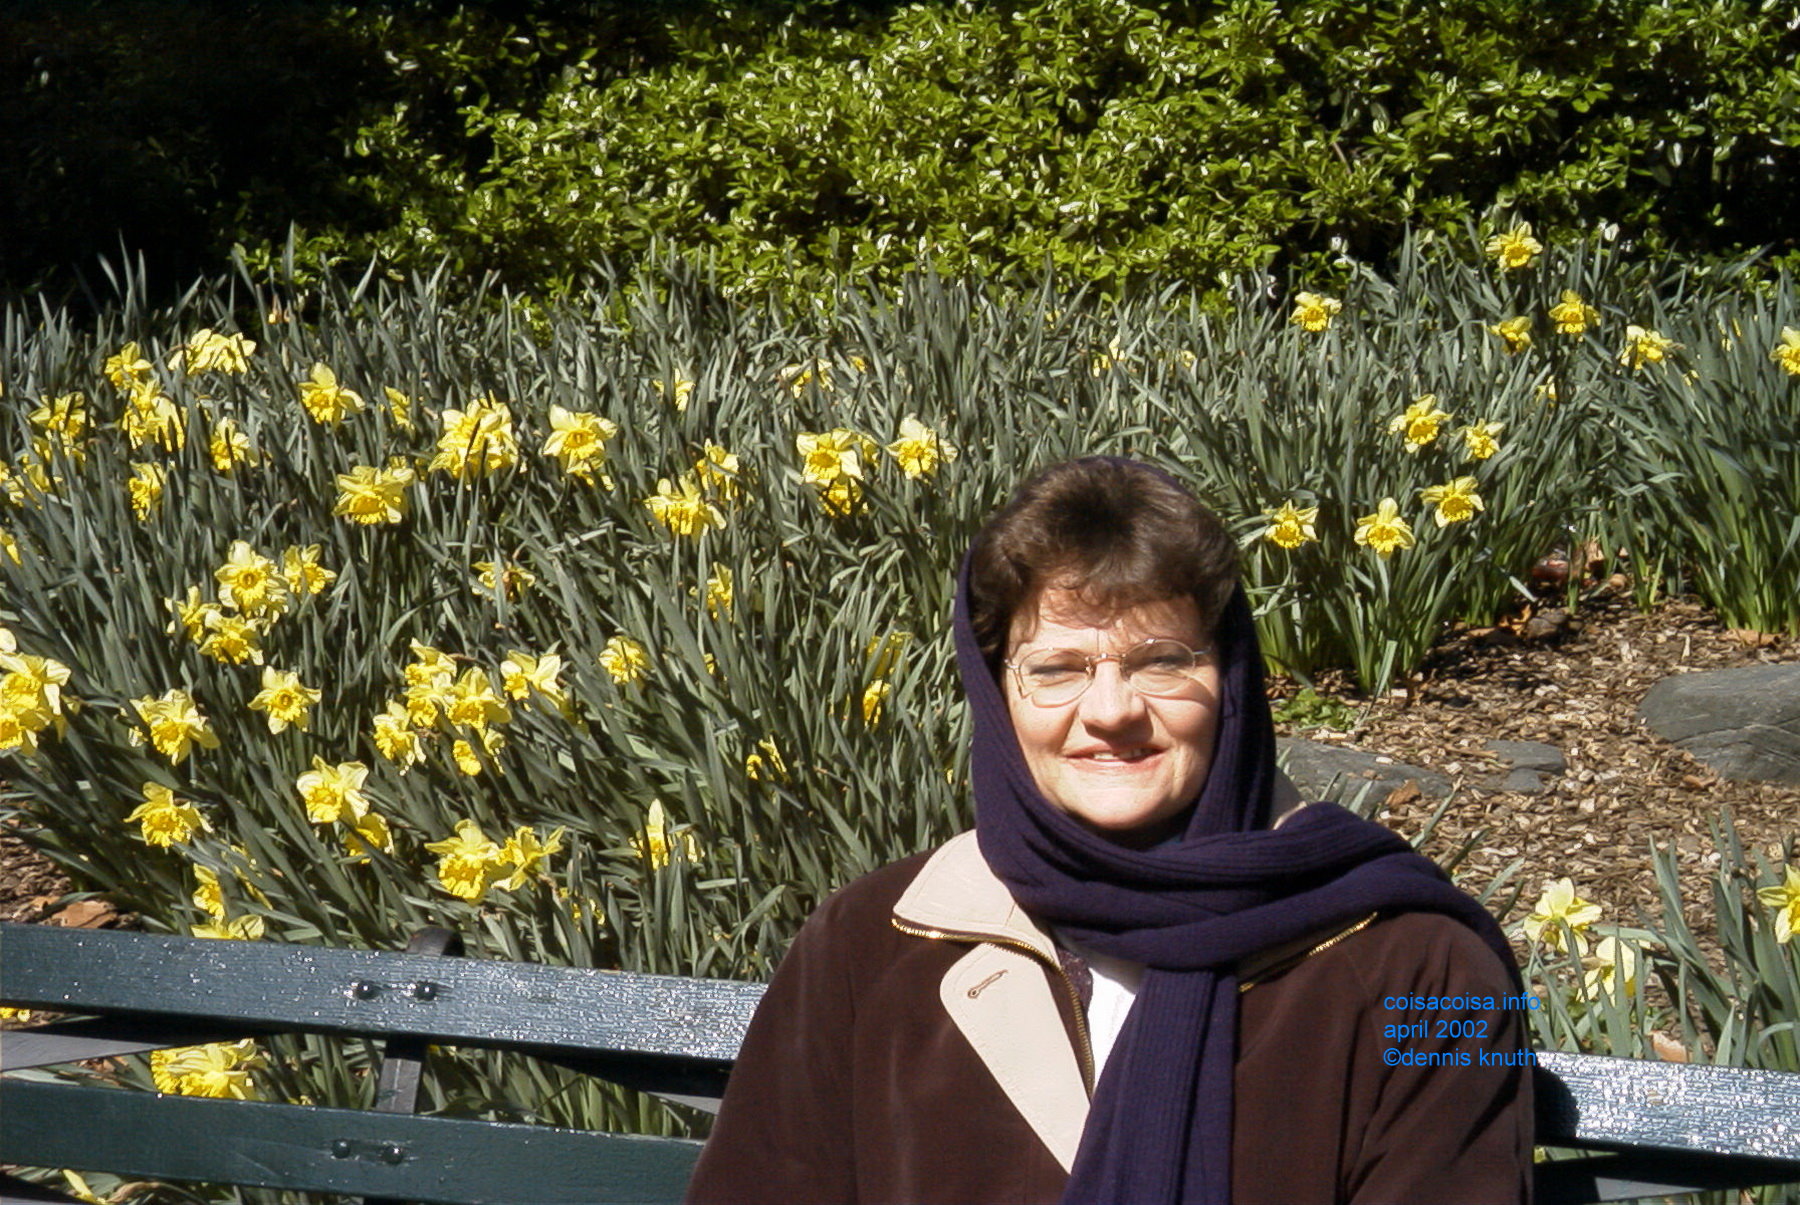 Daffodils in April 2002 in Central Park